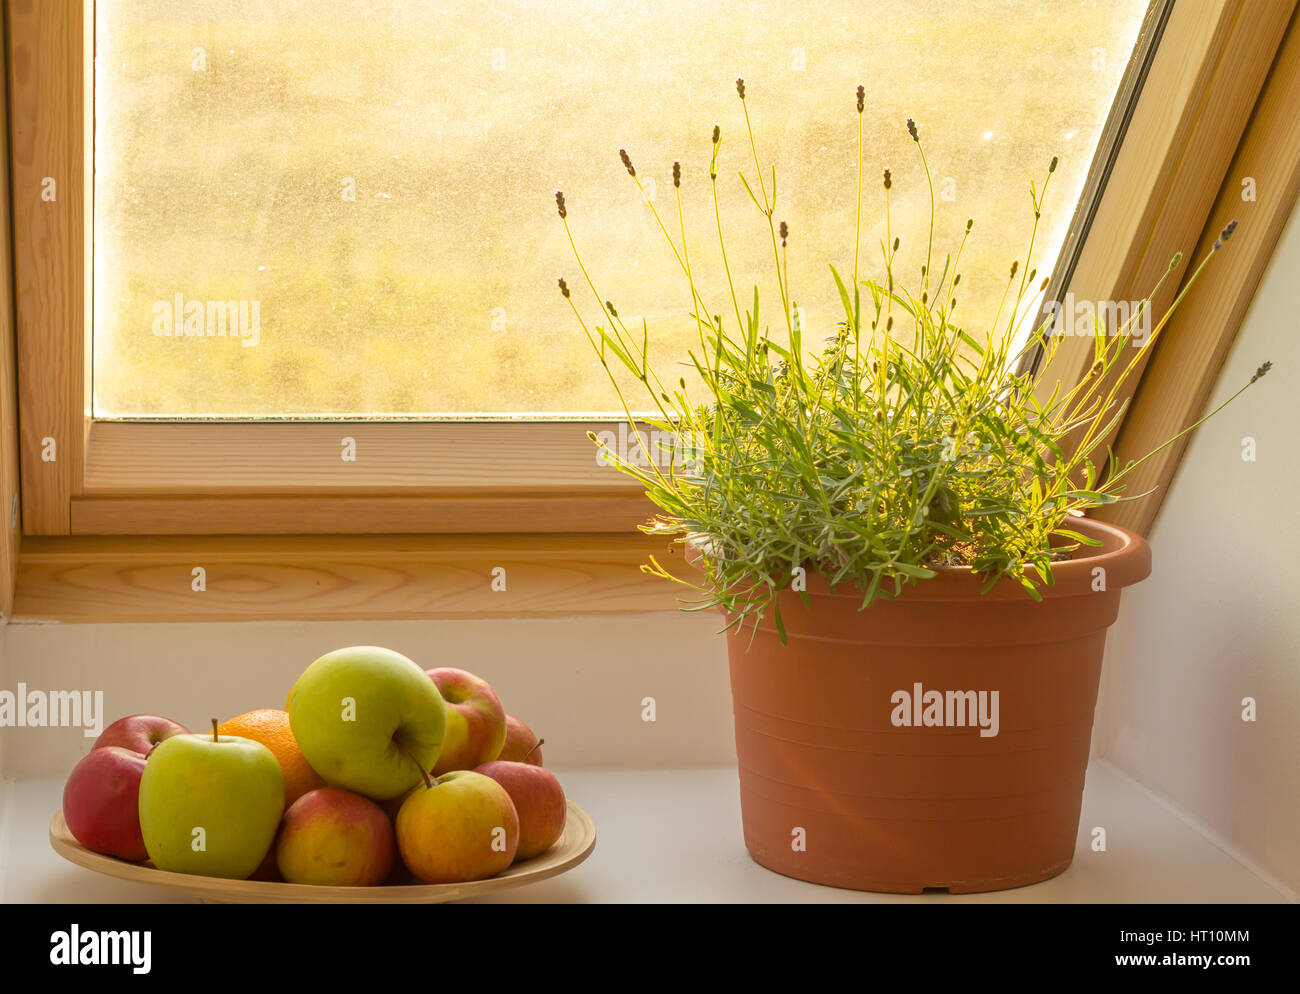 herbs on window sill Stock Photo